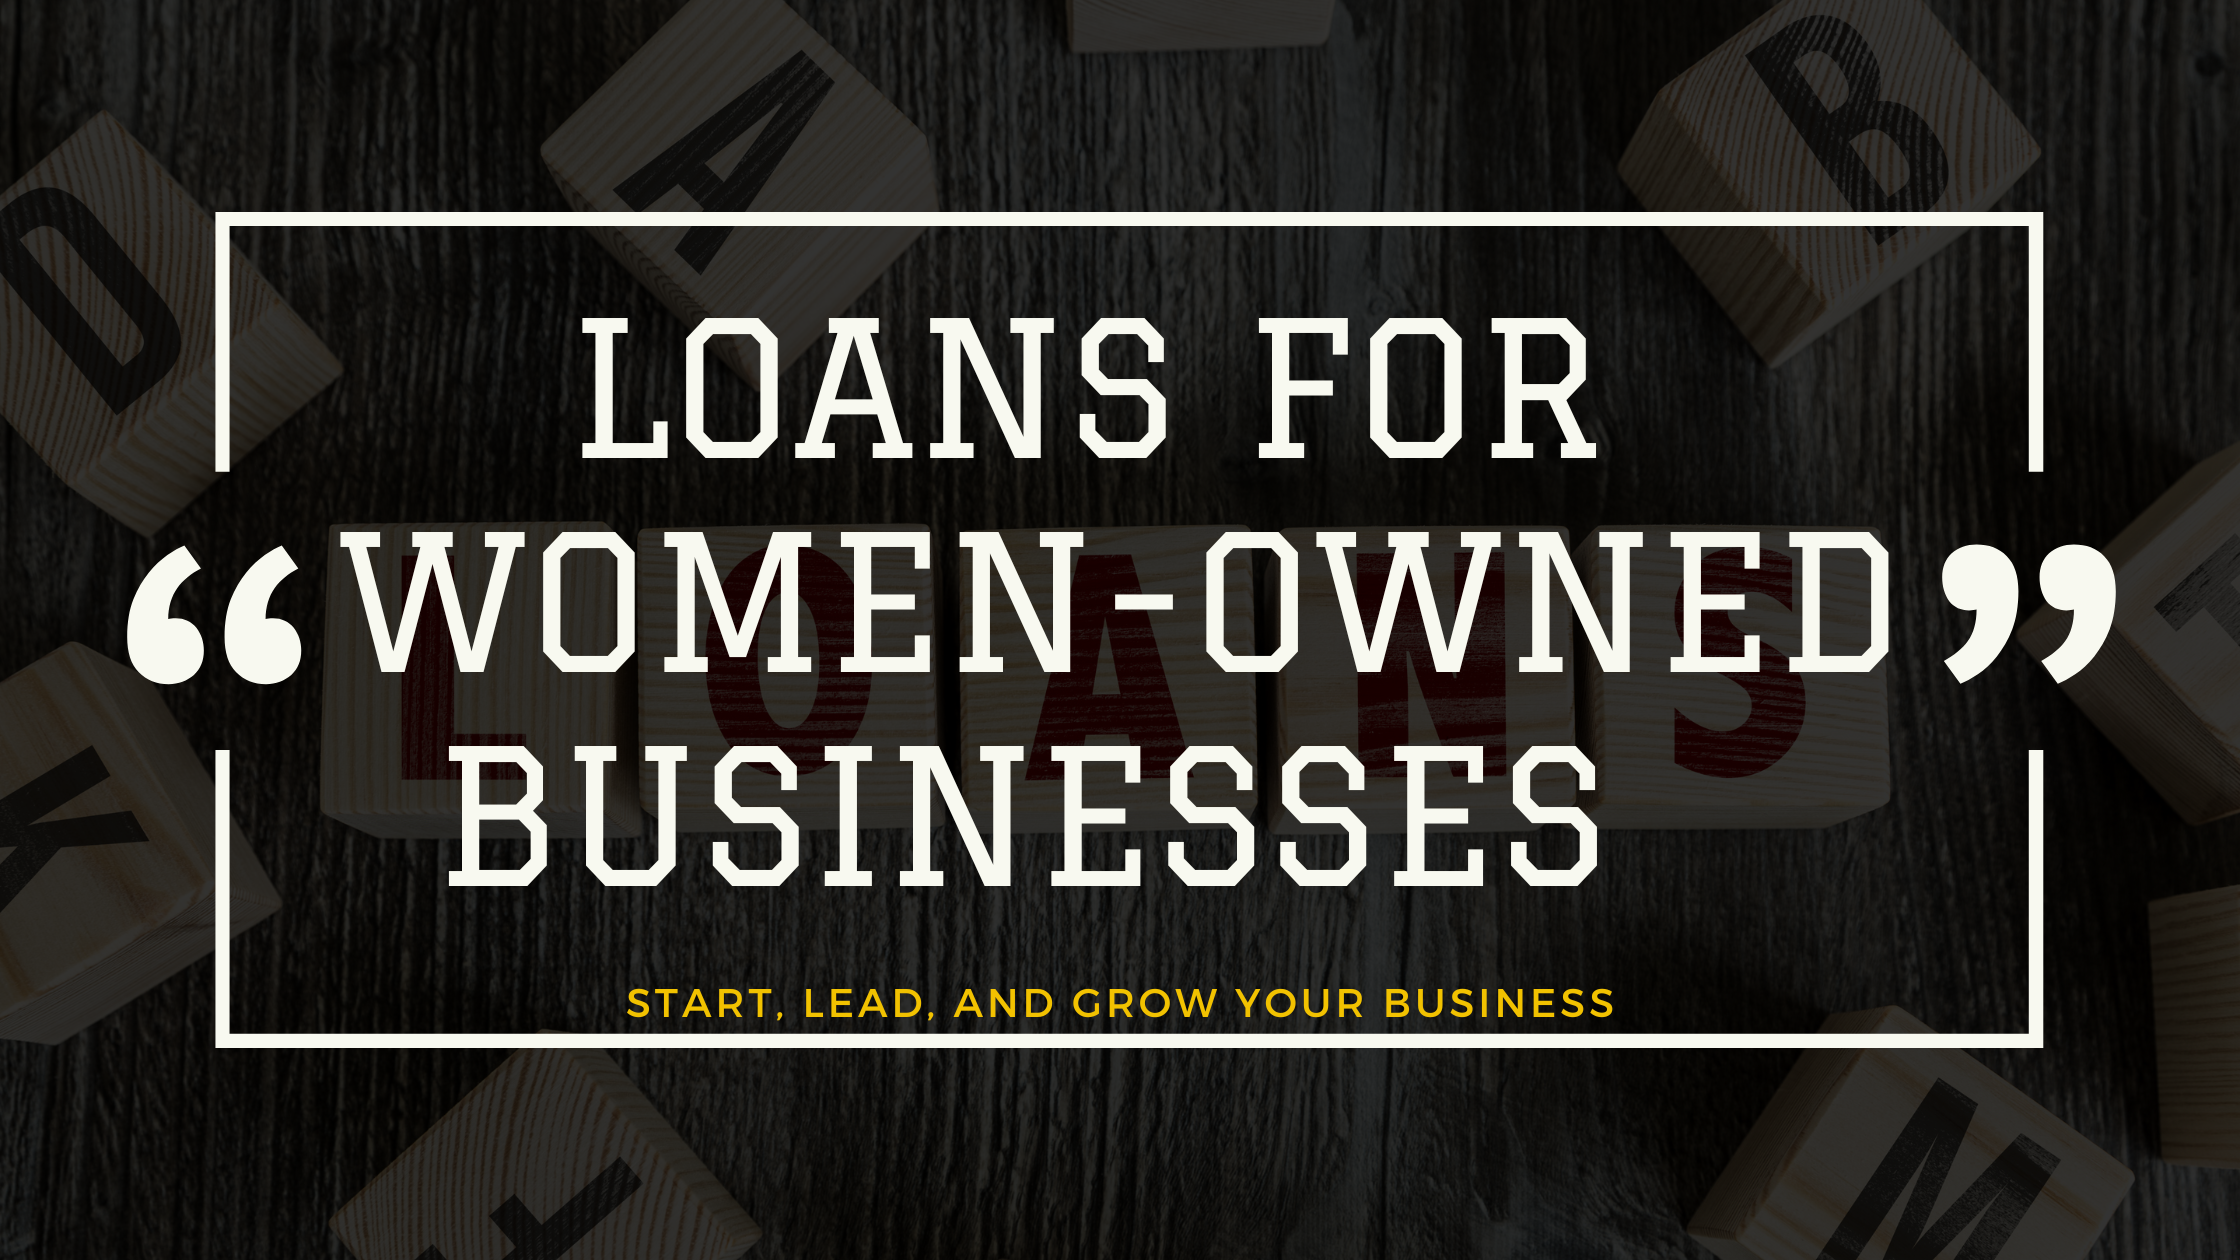 Loans for Women Entrepreneurs